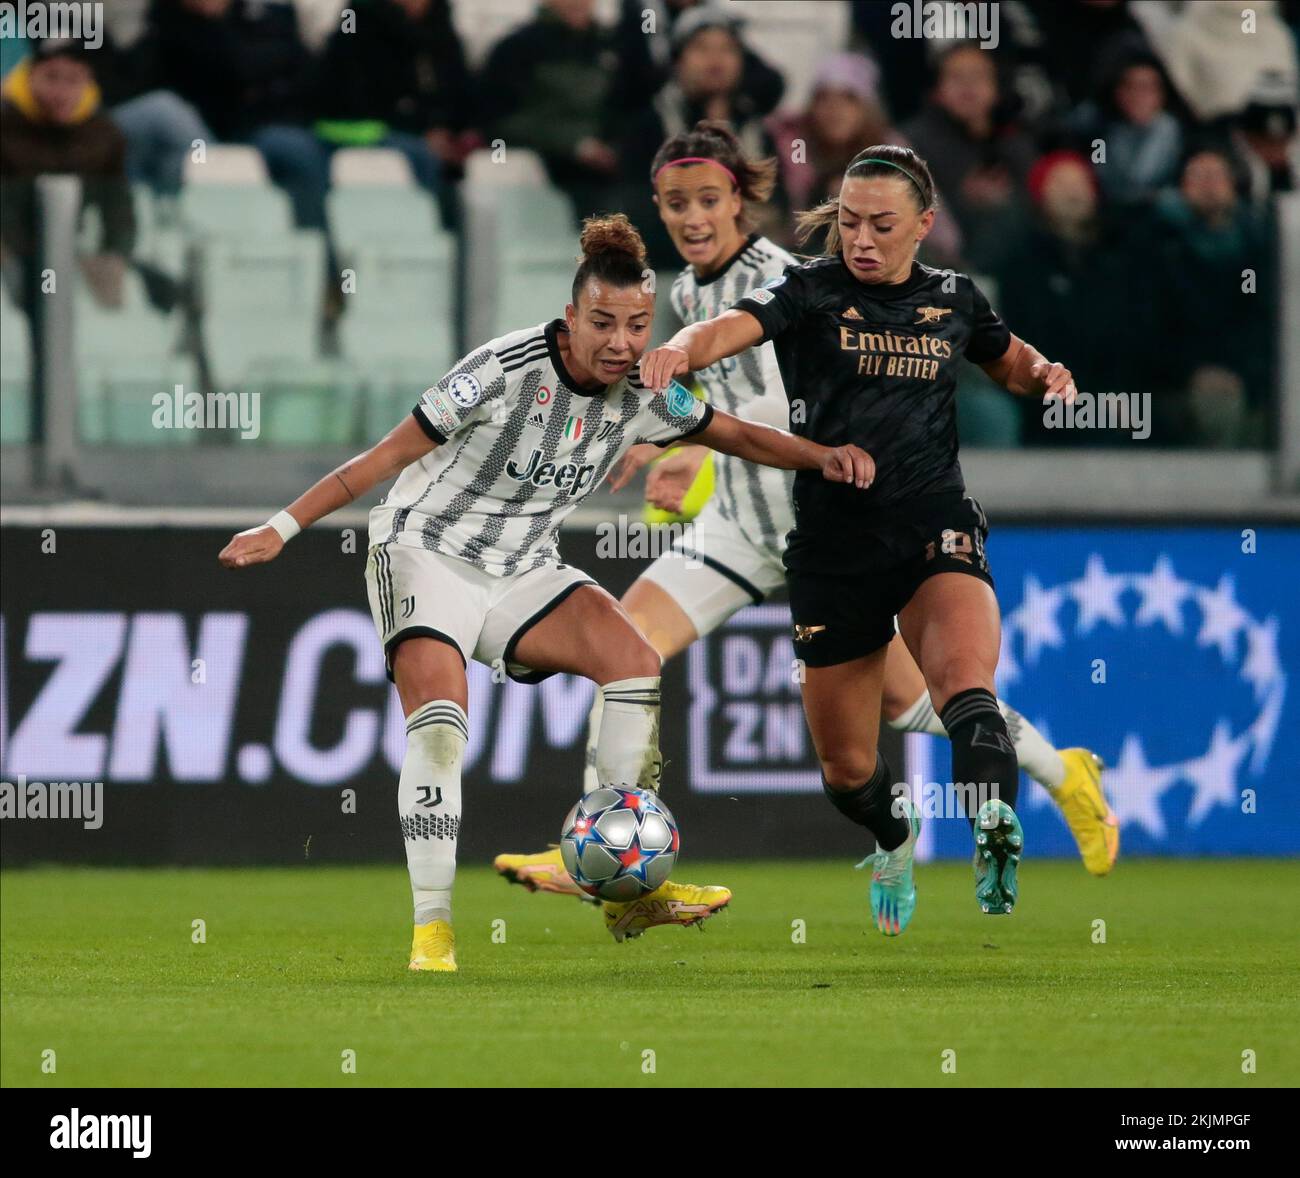 Arianna Caruso von Juventus Women während der UEFA Women's Champions League, Gruppe C, Fußballspiel zwischen Juventus Women und Arsenal Women am 24. Nove Stockfoto